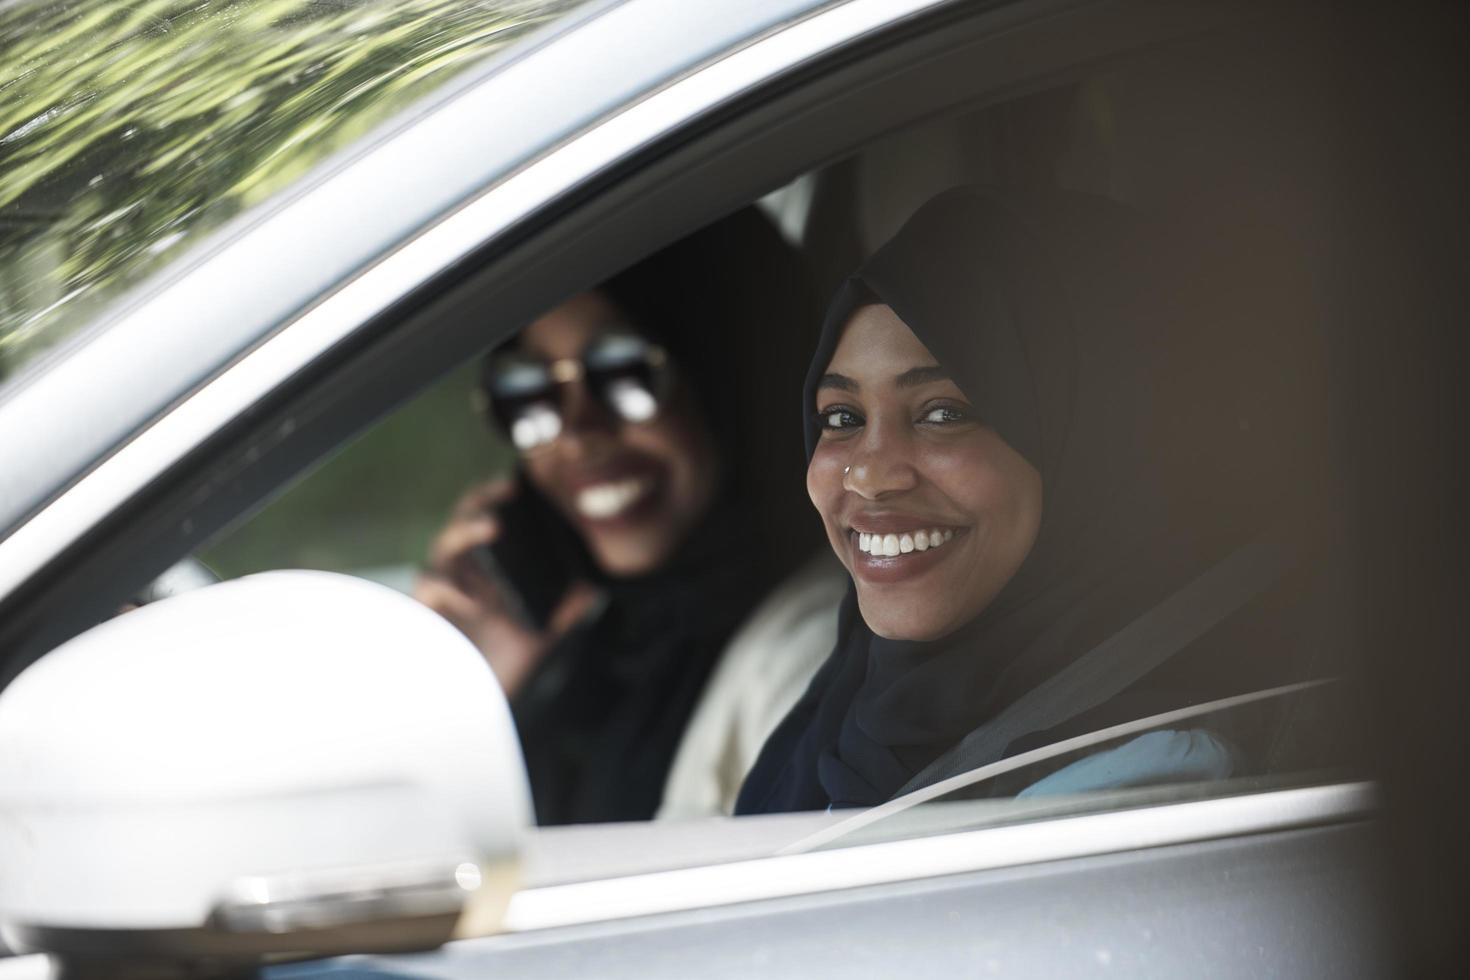 casal de mulher árabe viajando de carro foto